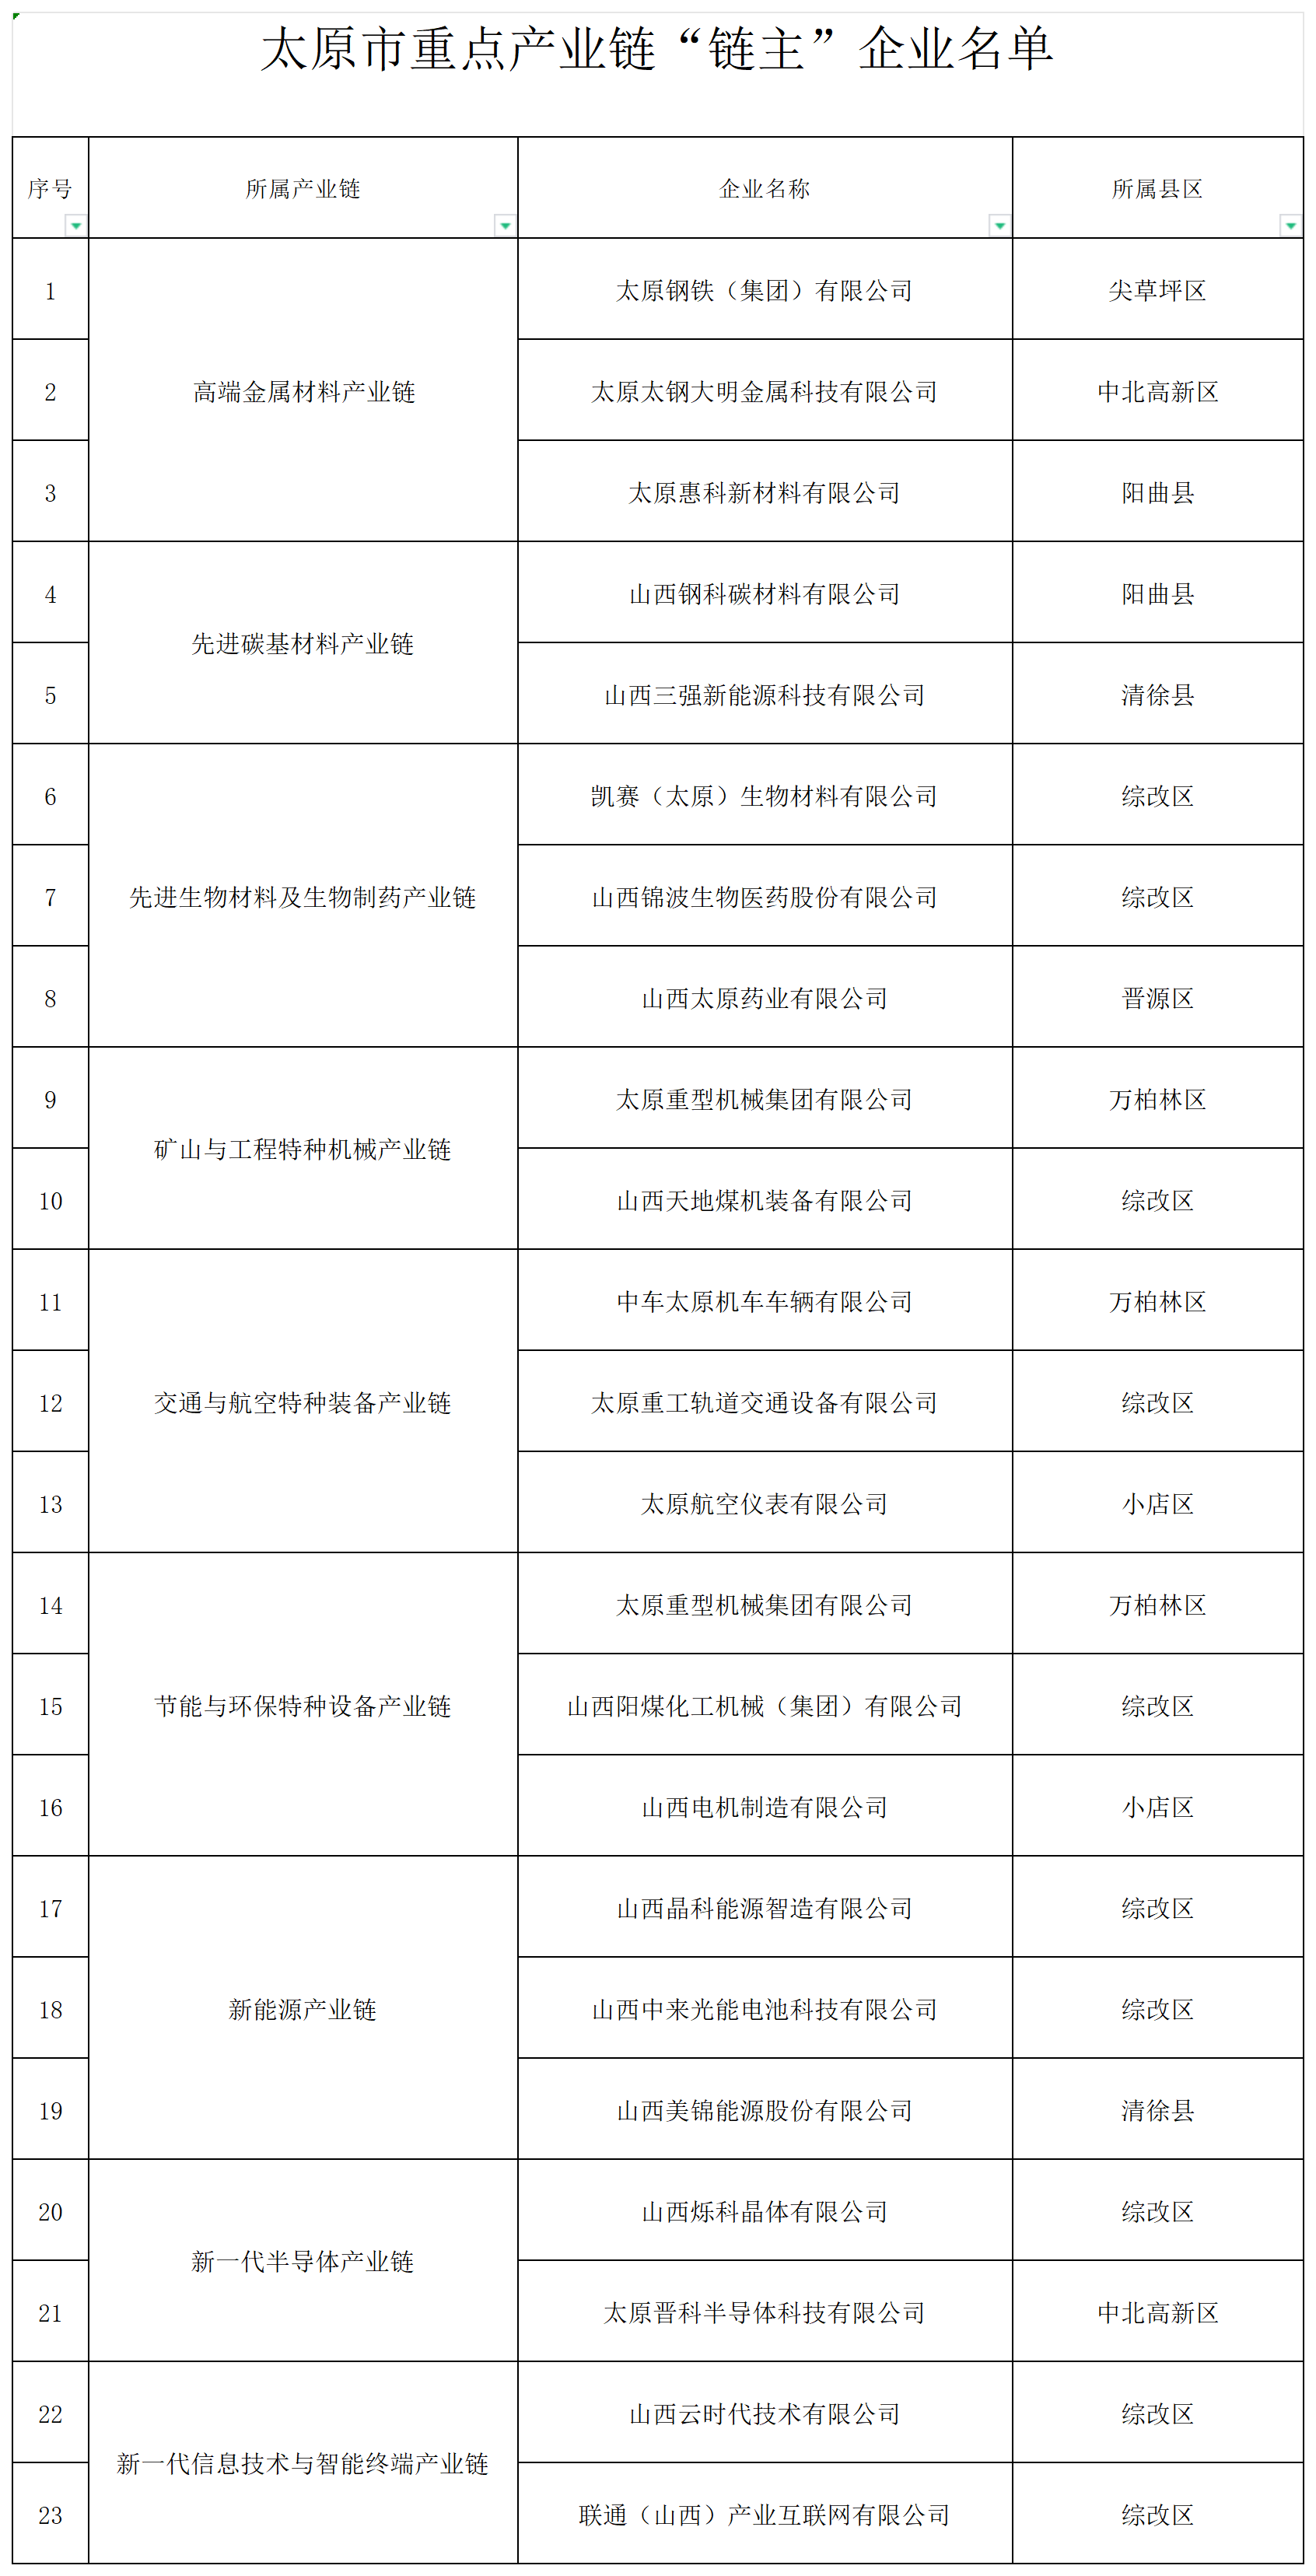 附件：太原市重点产业链“链主”企业名单_推荐名单.png